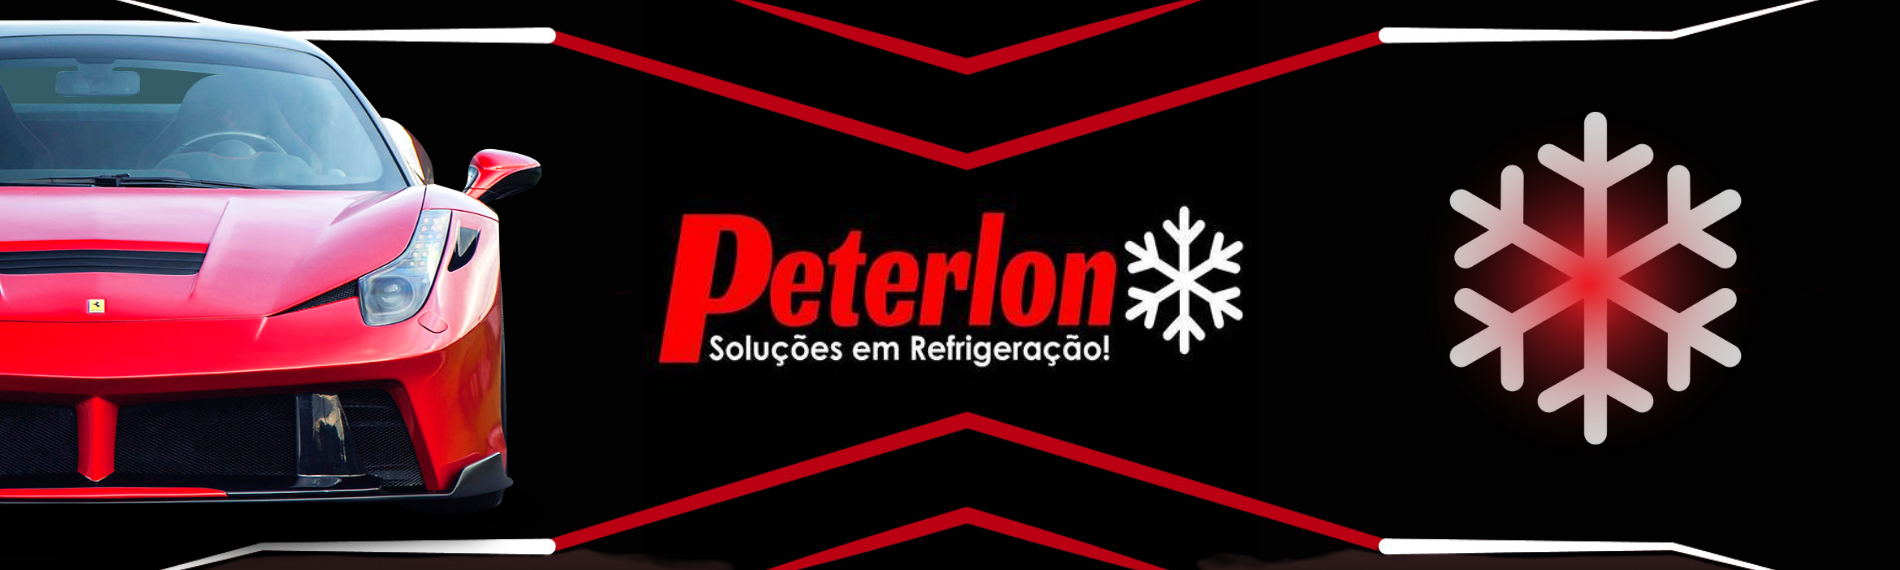 Peterlon Soluções em Refrigeração Automotiva